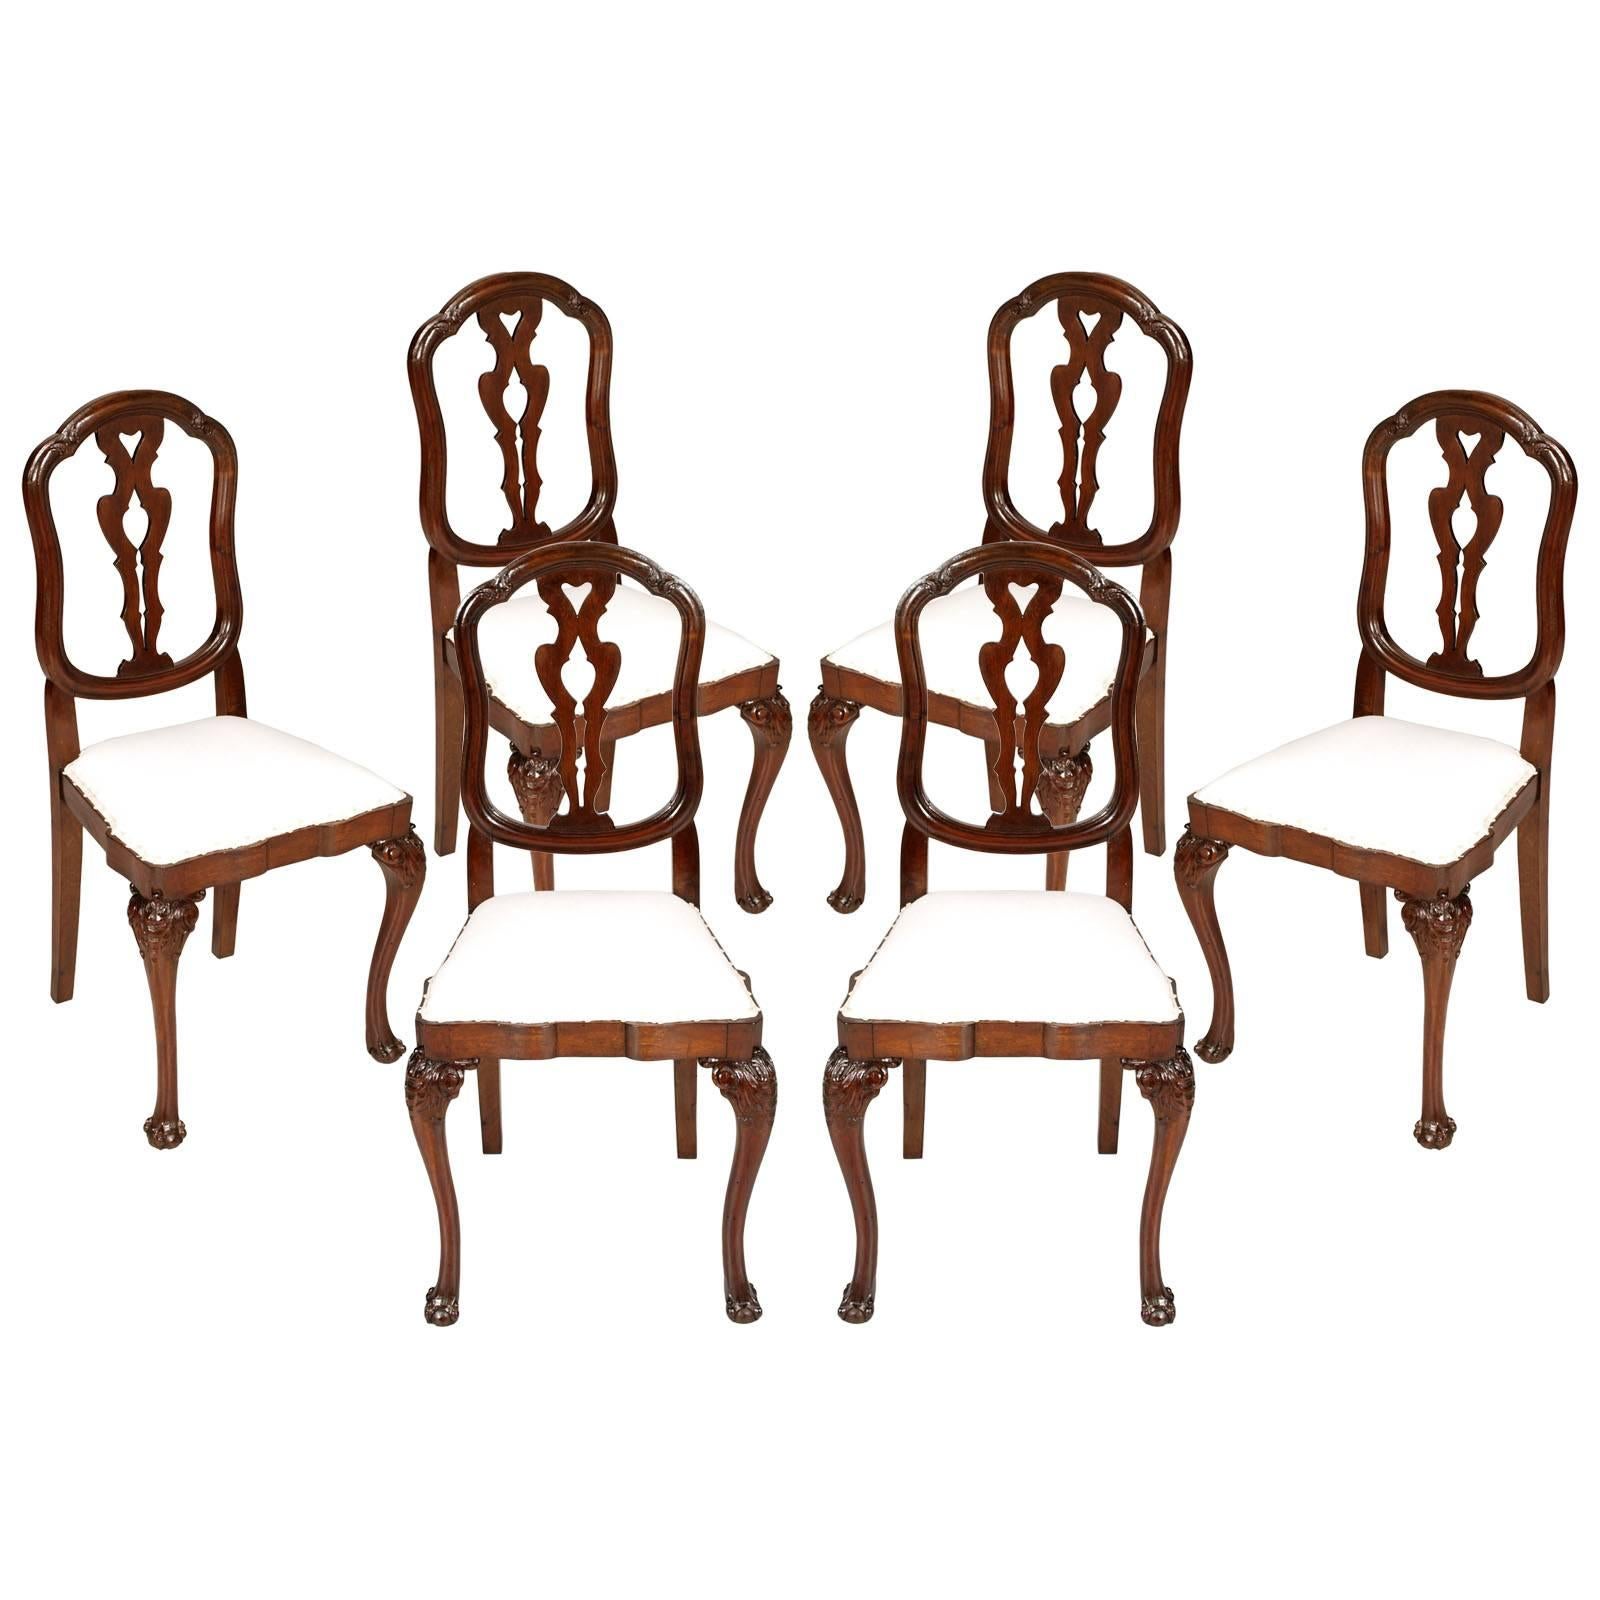 Sechs venezianische Chippendale-Stühle des 19. Jahrhunderts aus handgeschnitztem Nussbaumholz, restauriert 